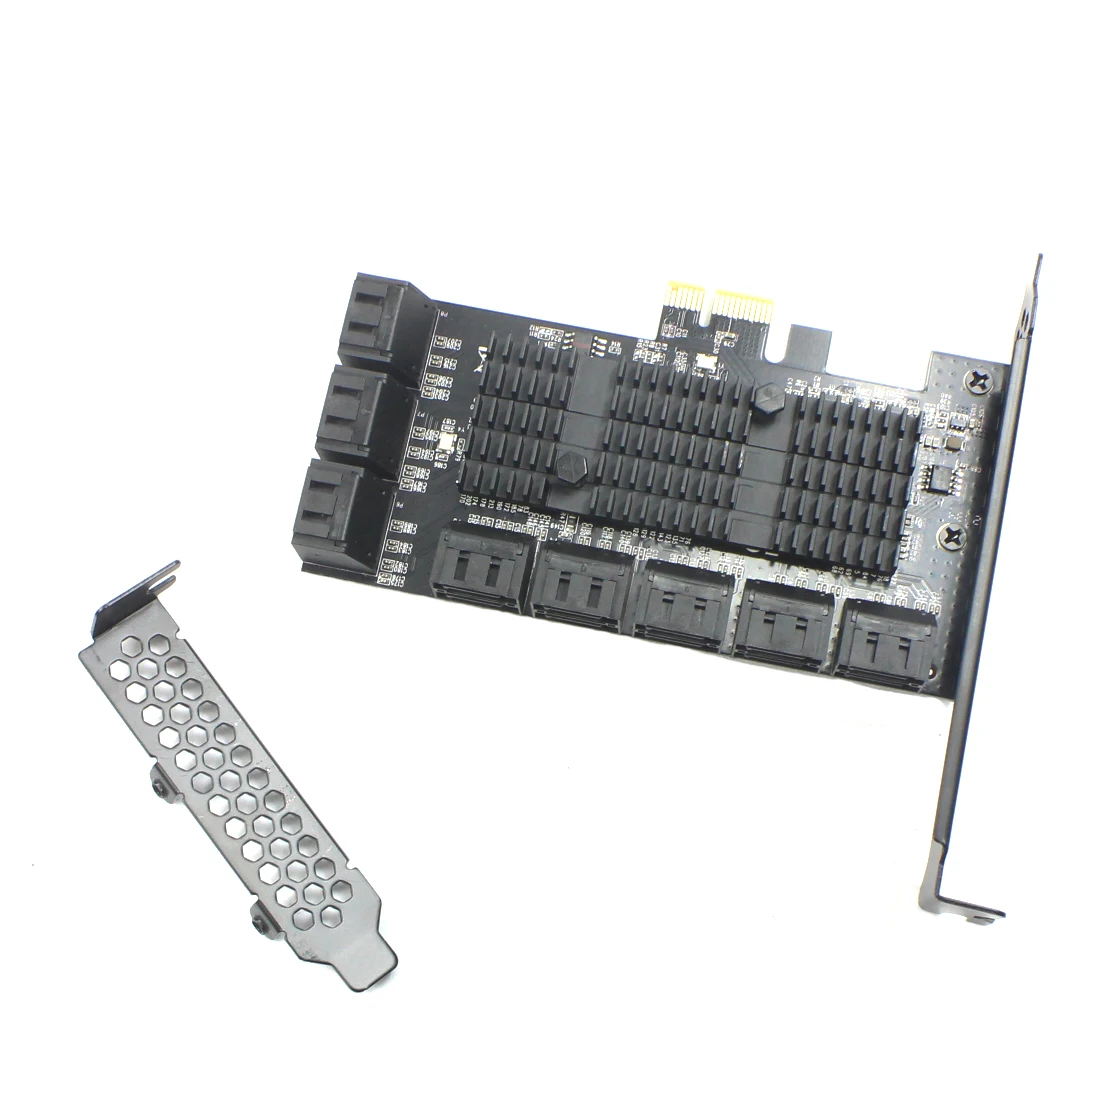 Adaptador SATA PCIE 1X, 5/8/10/16 puertos PCIE X4 X8 X16 a SATA 3,0, tarjeta de expansión con elevador de velocidad de 6Gbps, controlador SATA PCI Express III